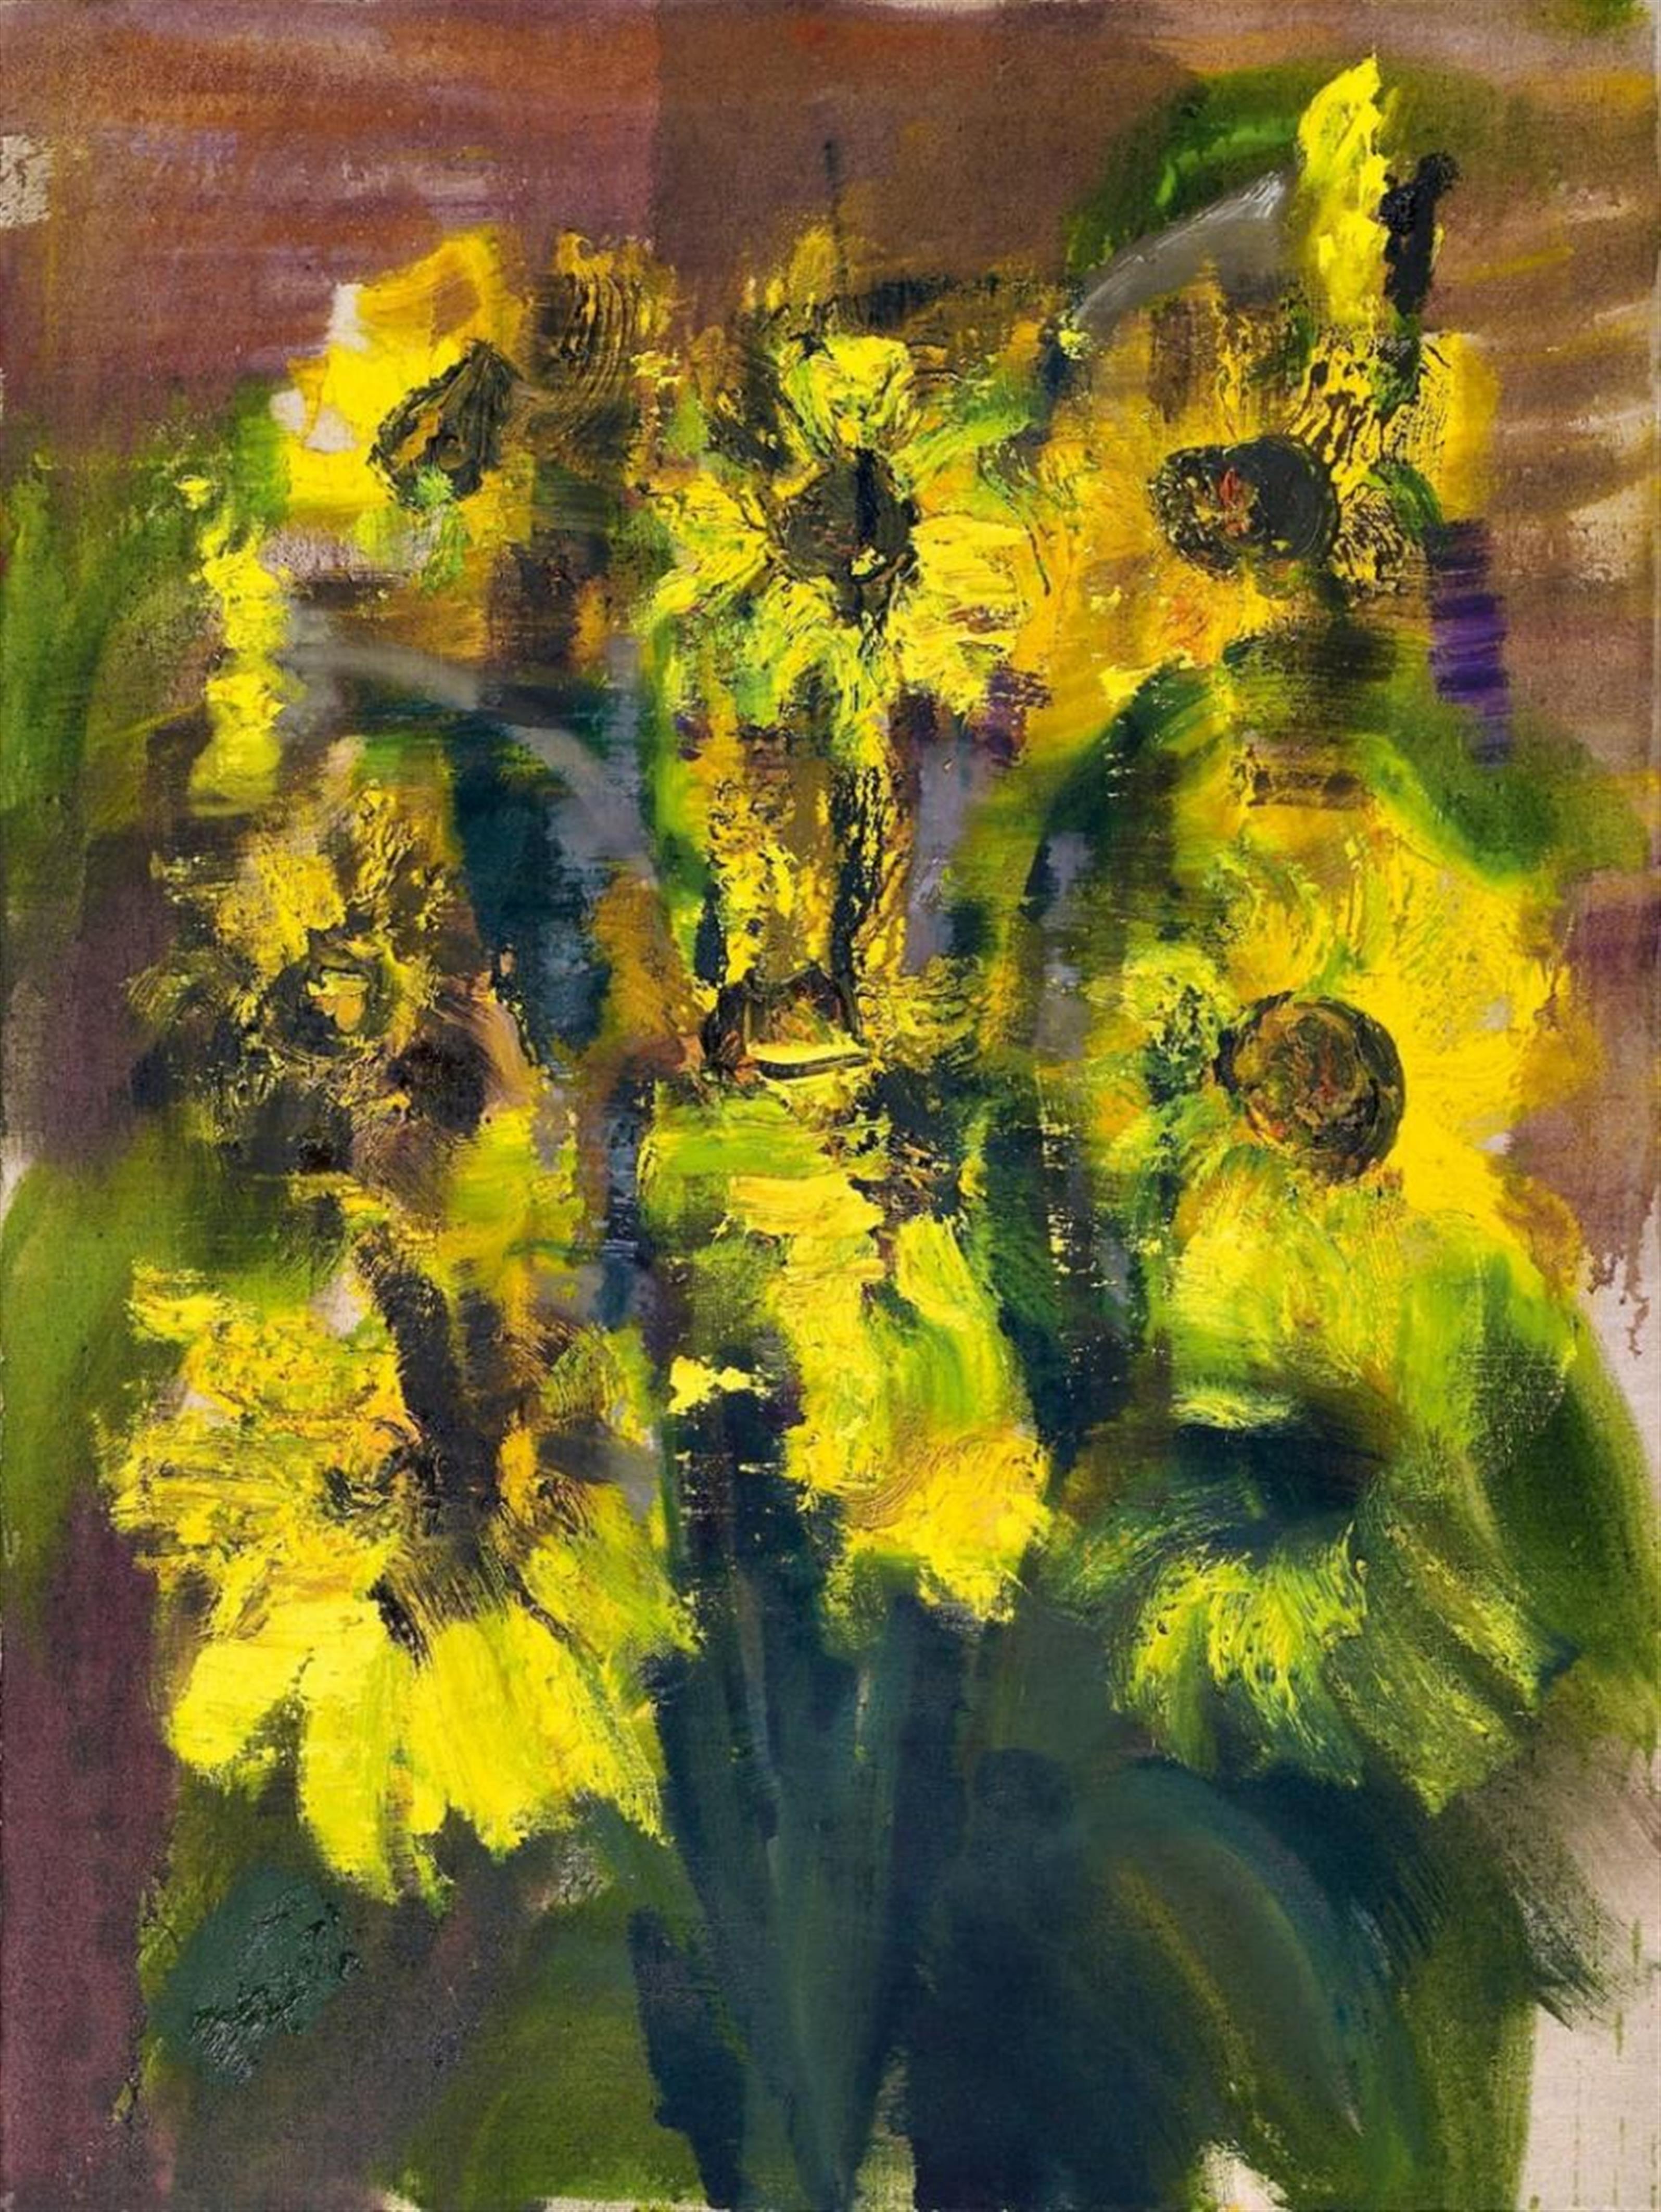 Rainer Fetting - Sonnenblumen - image-1